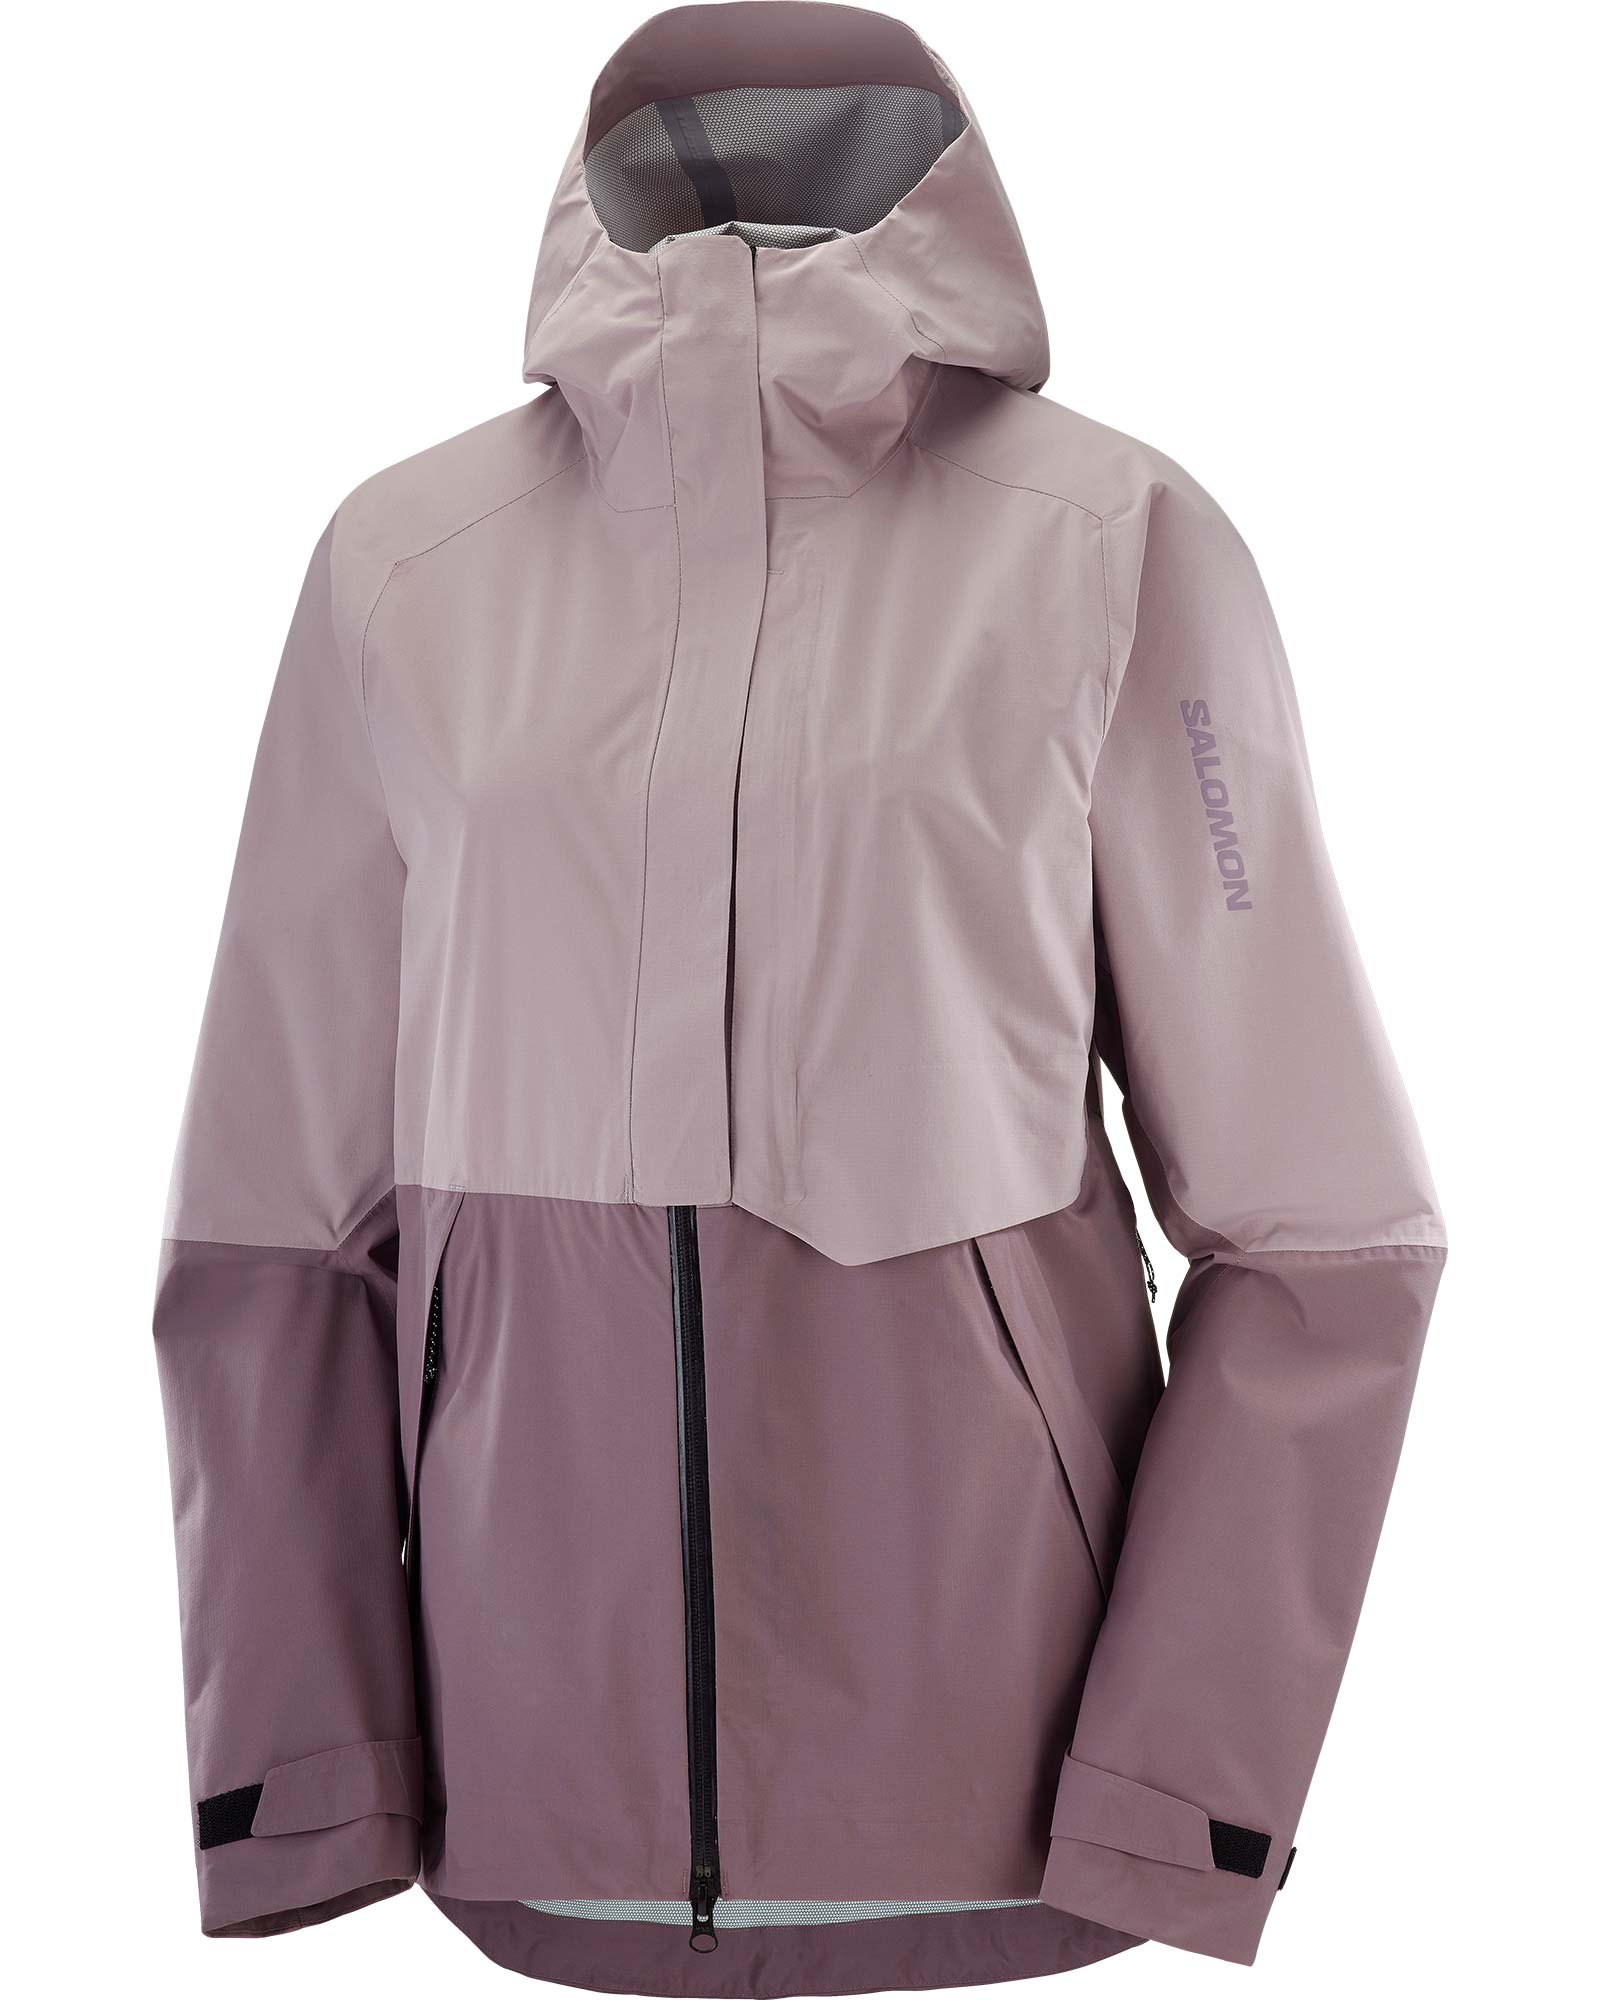 Salomon Women's Outerpath Waterproof Pro Jacket